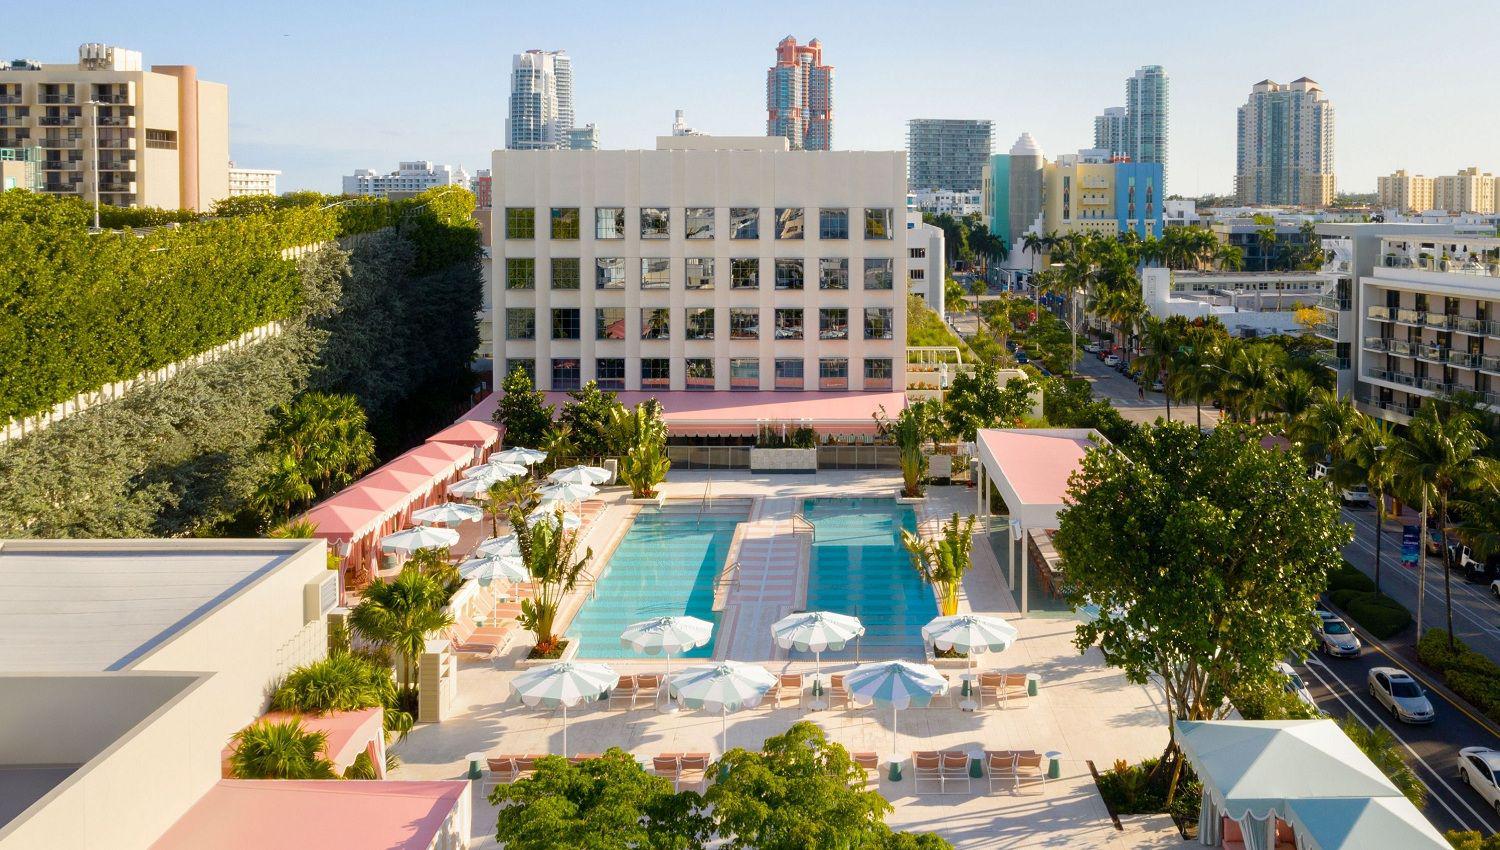 El rey de la noche de Miami inauguroacute el hotel maacutes lujoso de South Beach